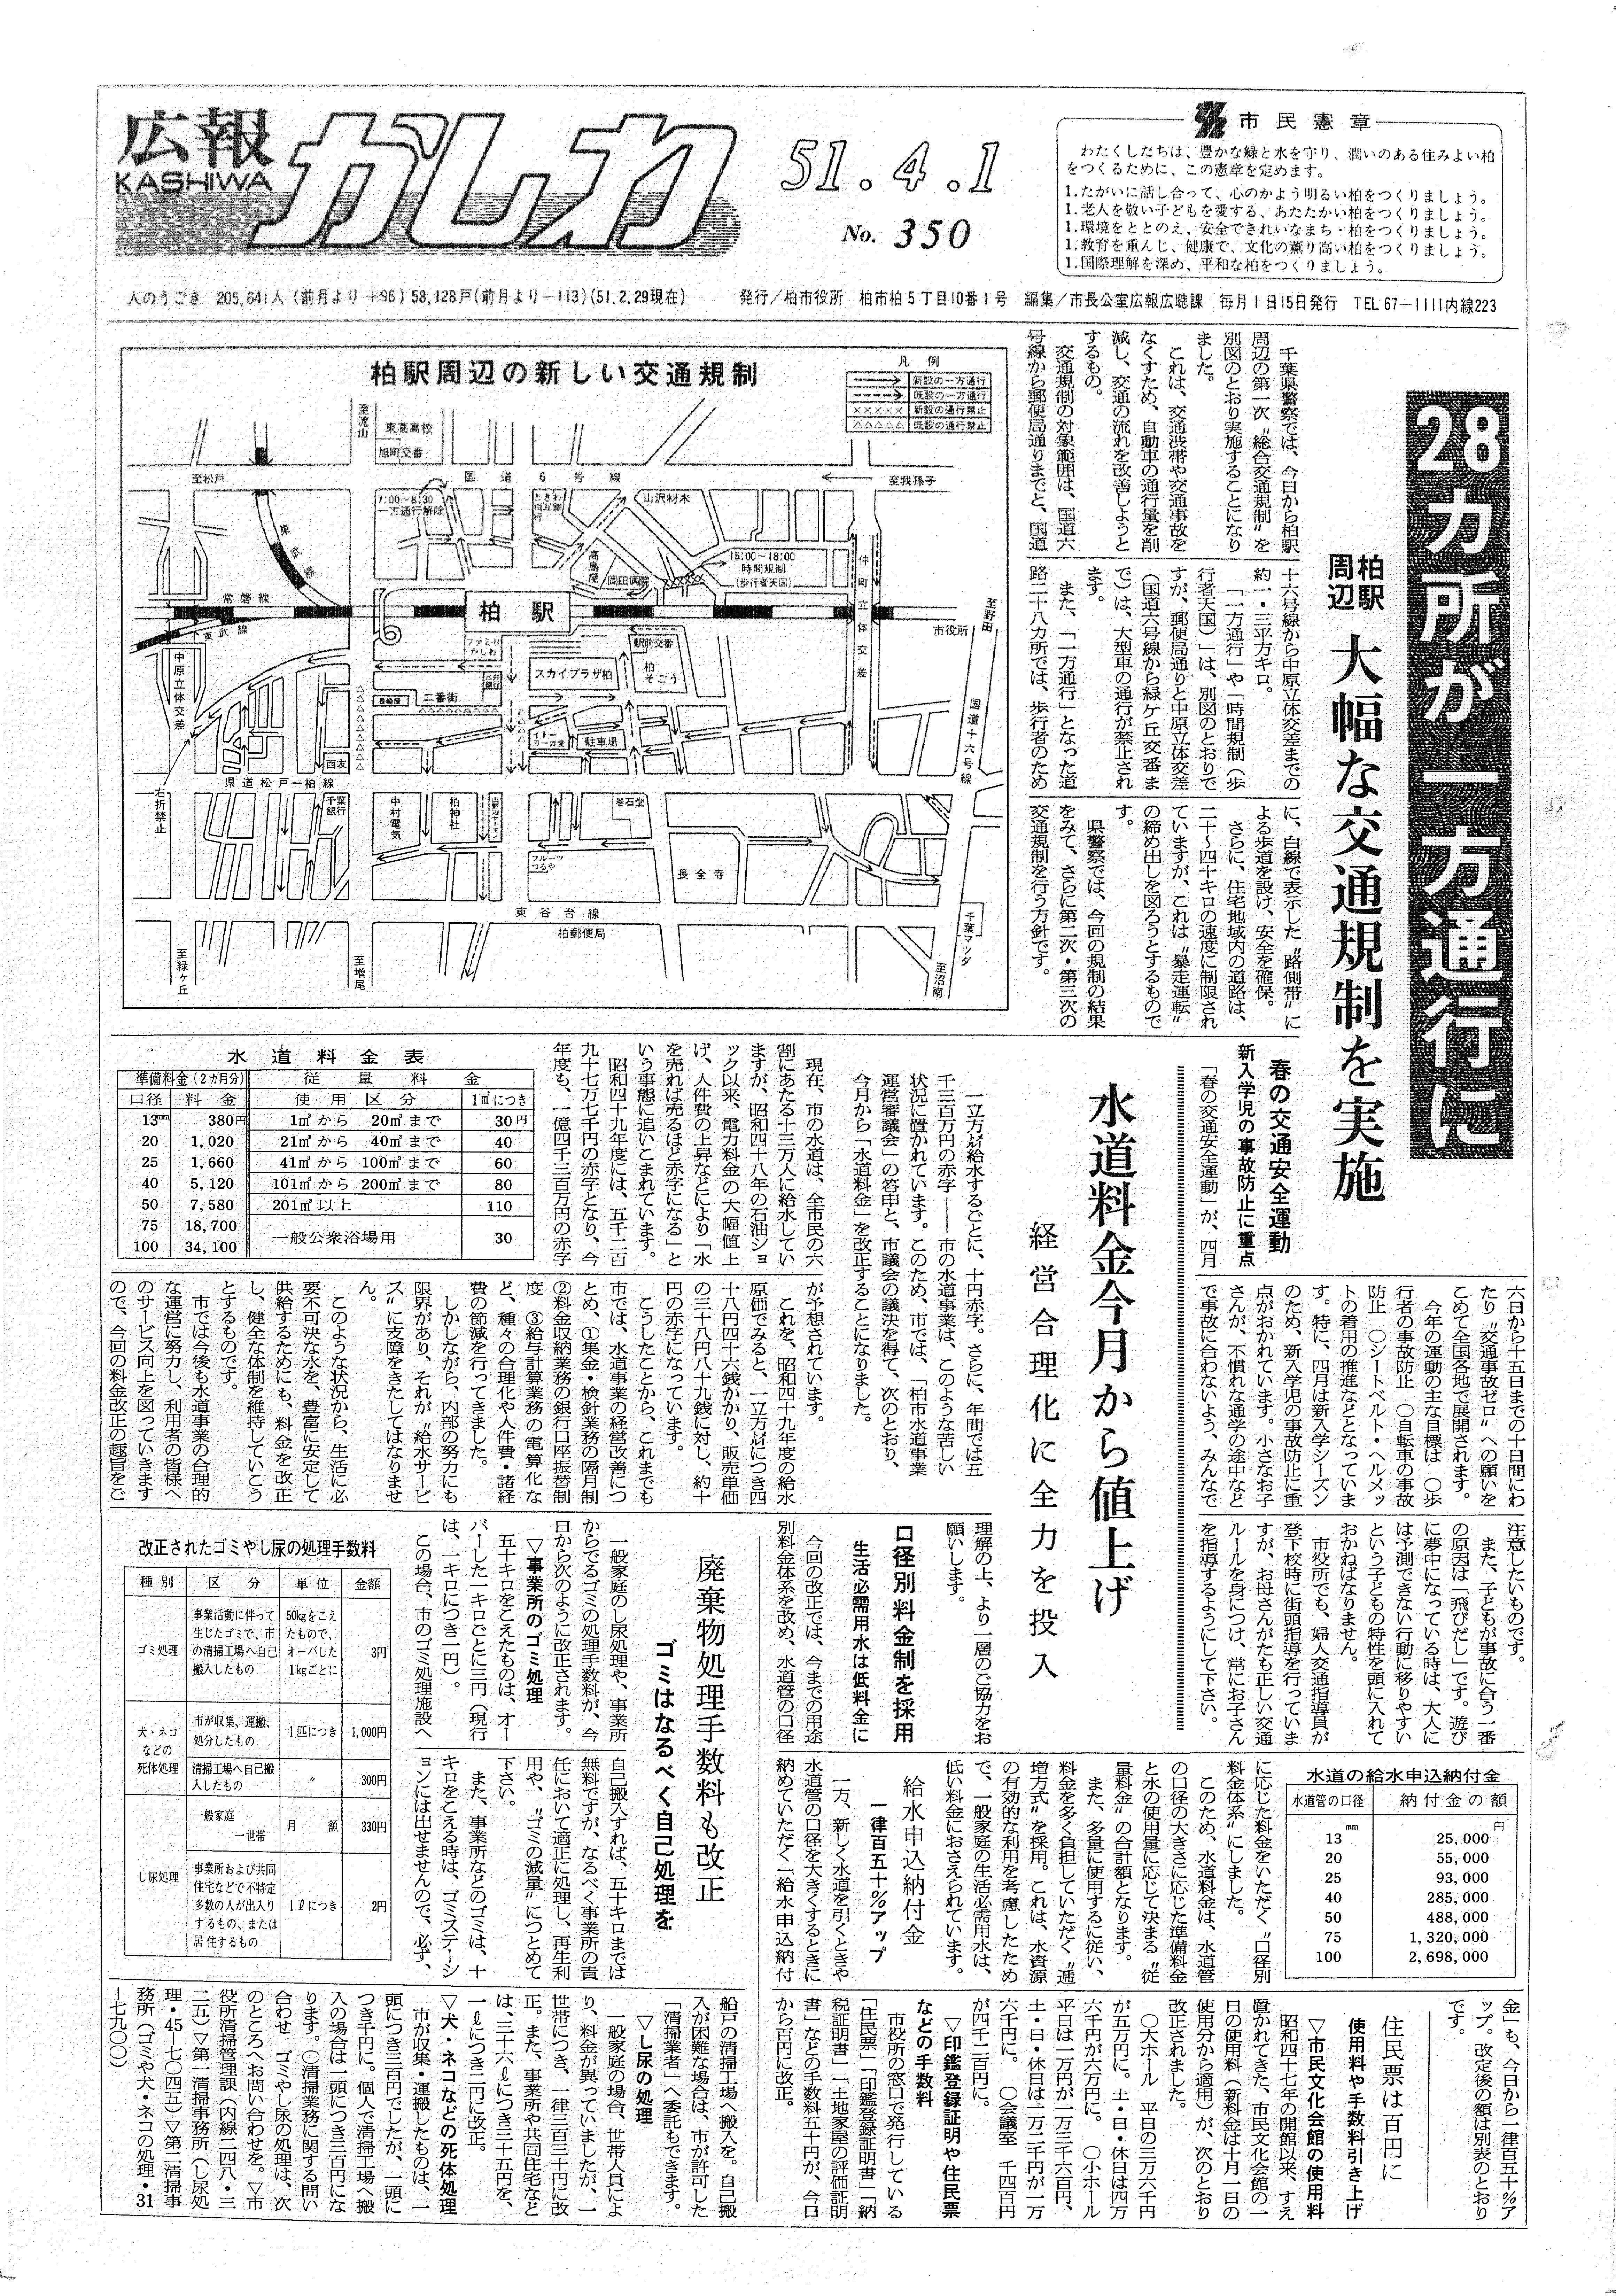 広報かしわ　昭和51年4月1日発行　350号